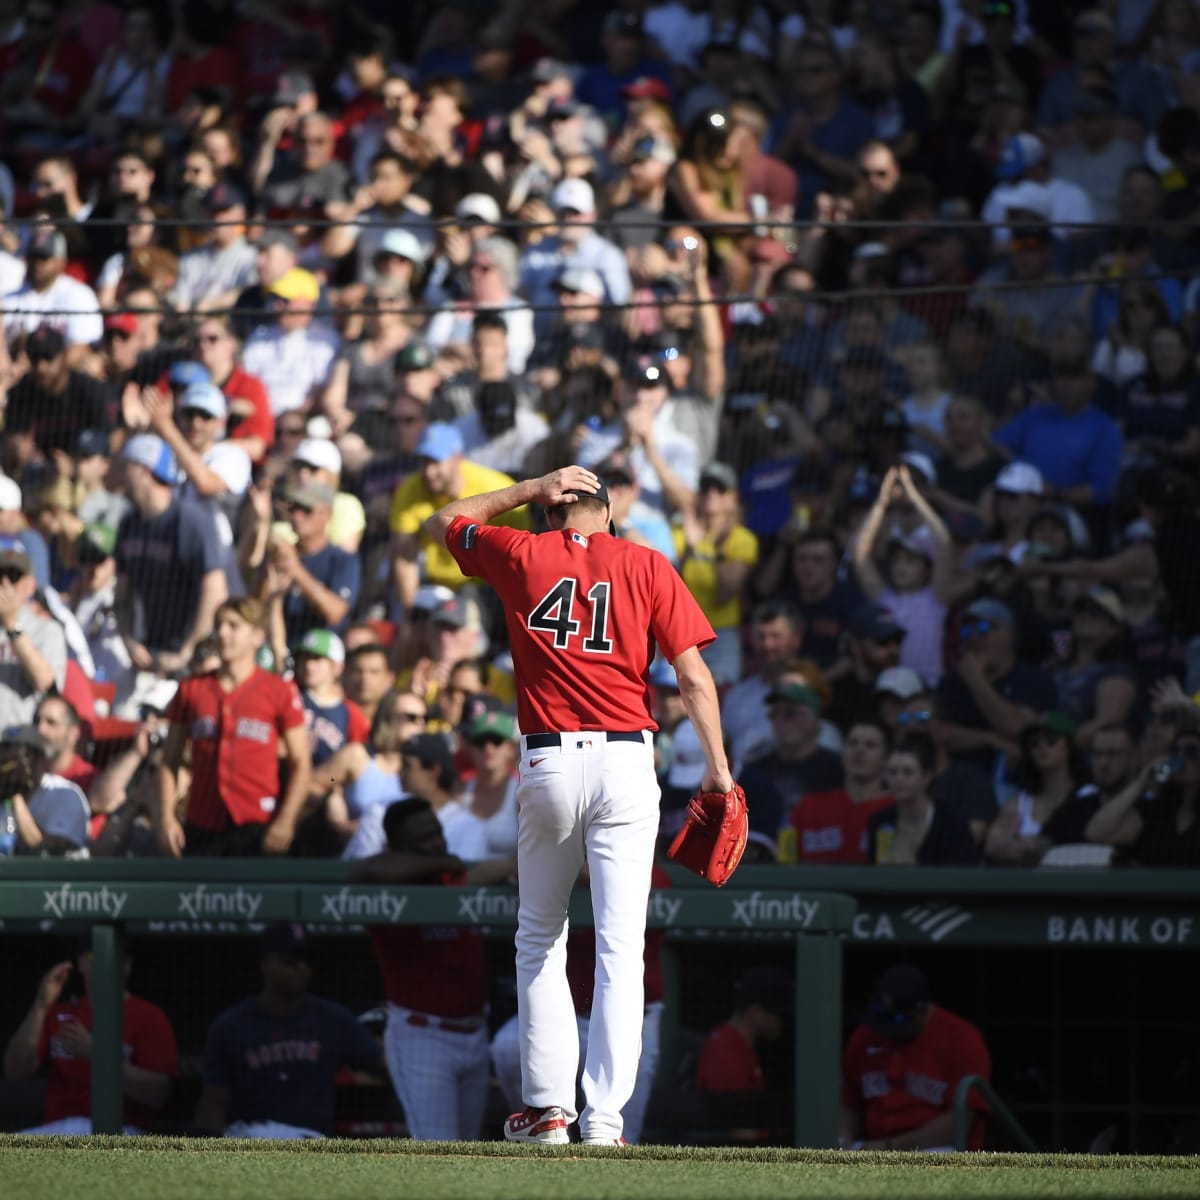 Boston Red Sox Fan Jerseys for sale